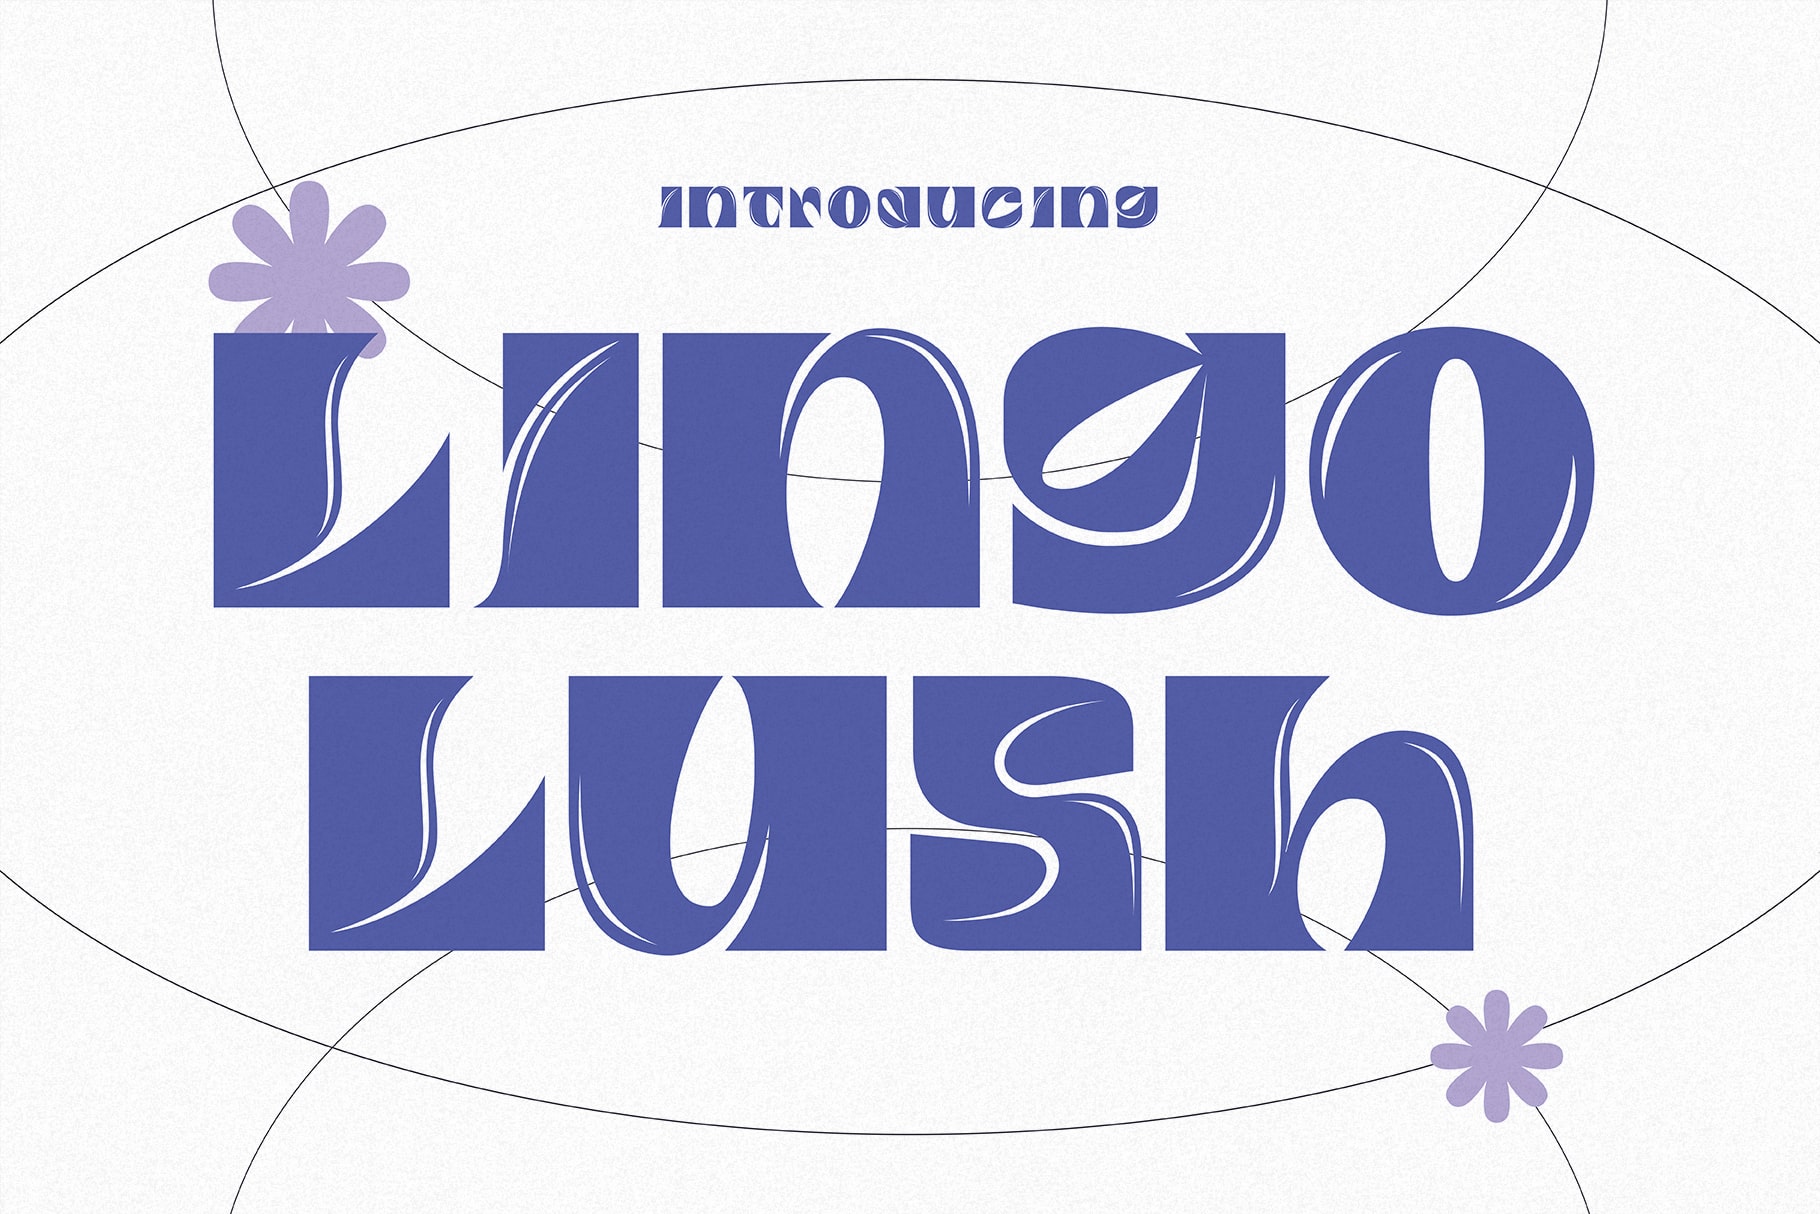 Lingo Lush Cover